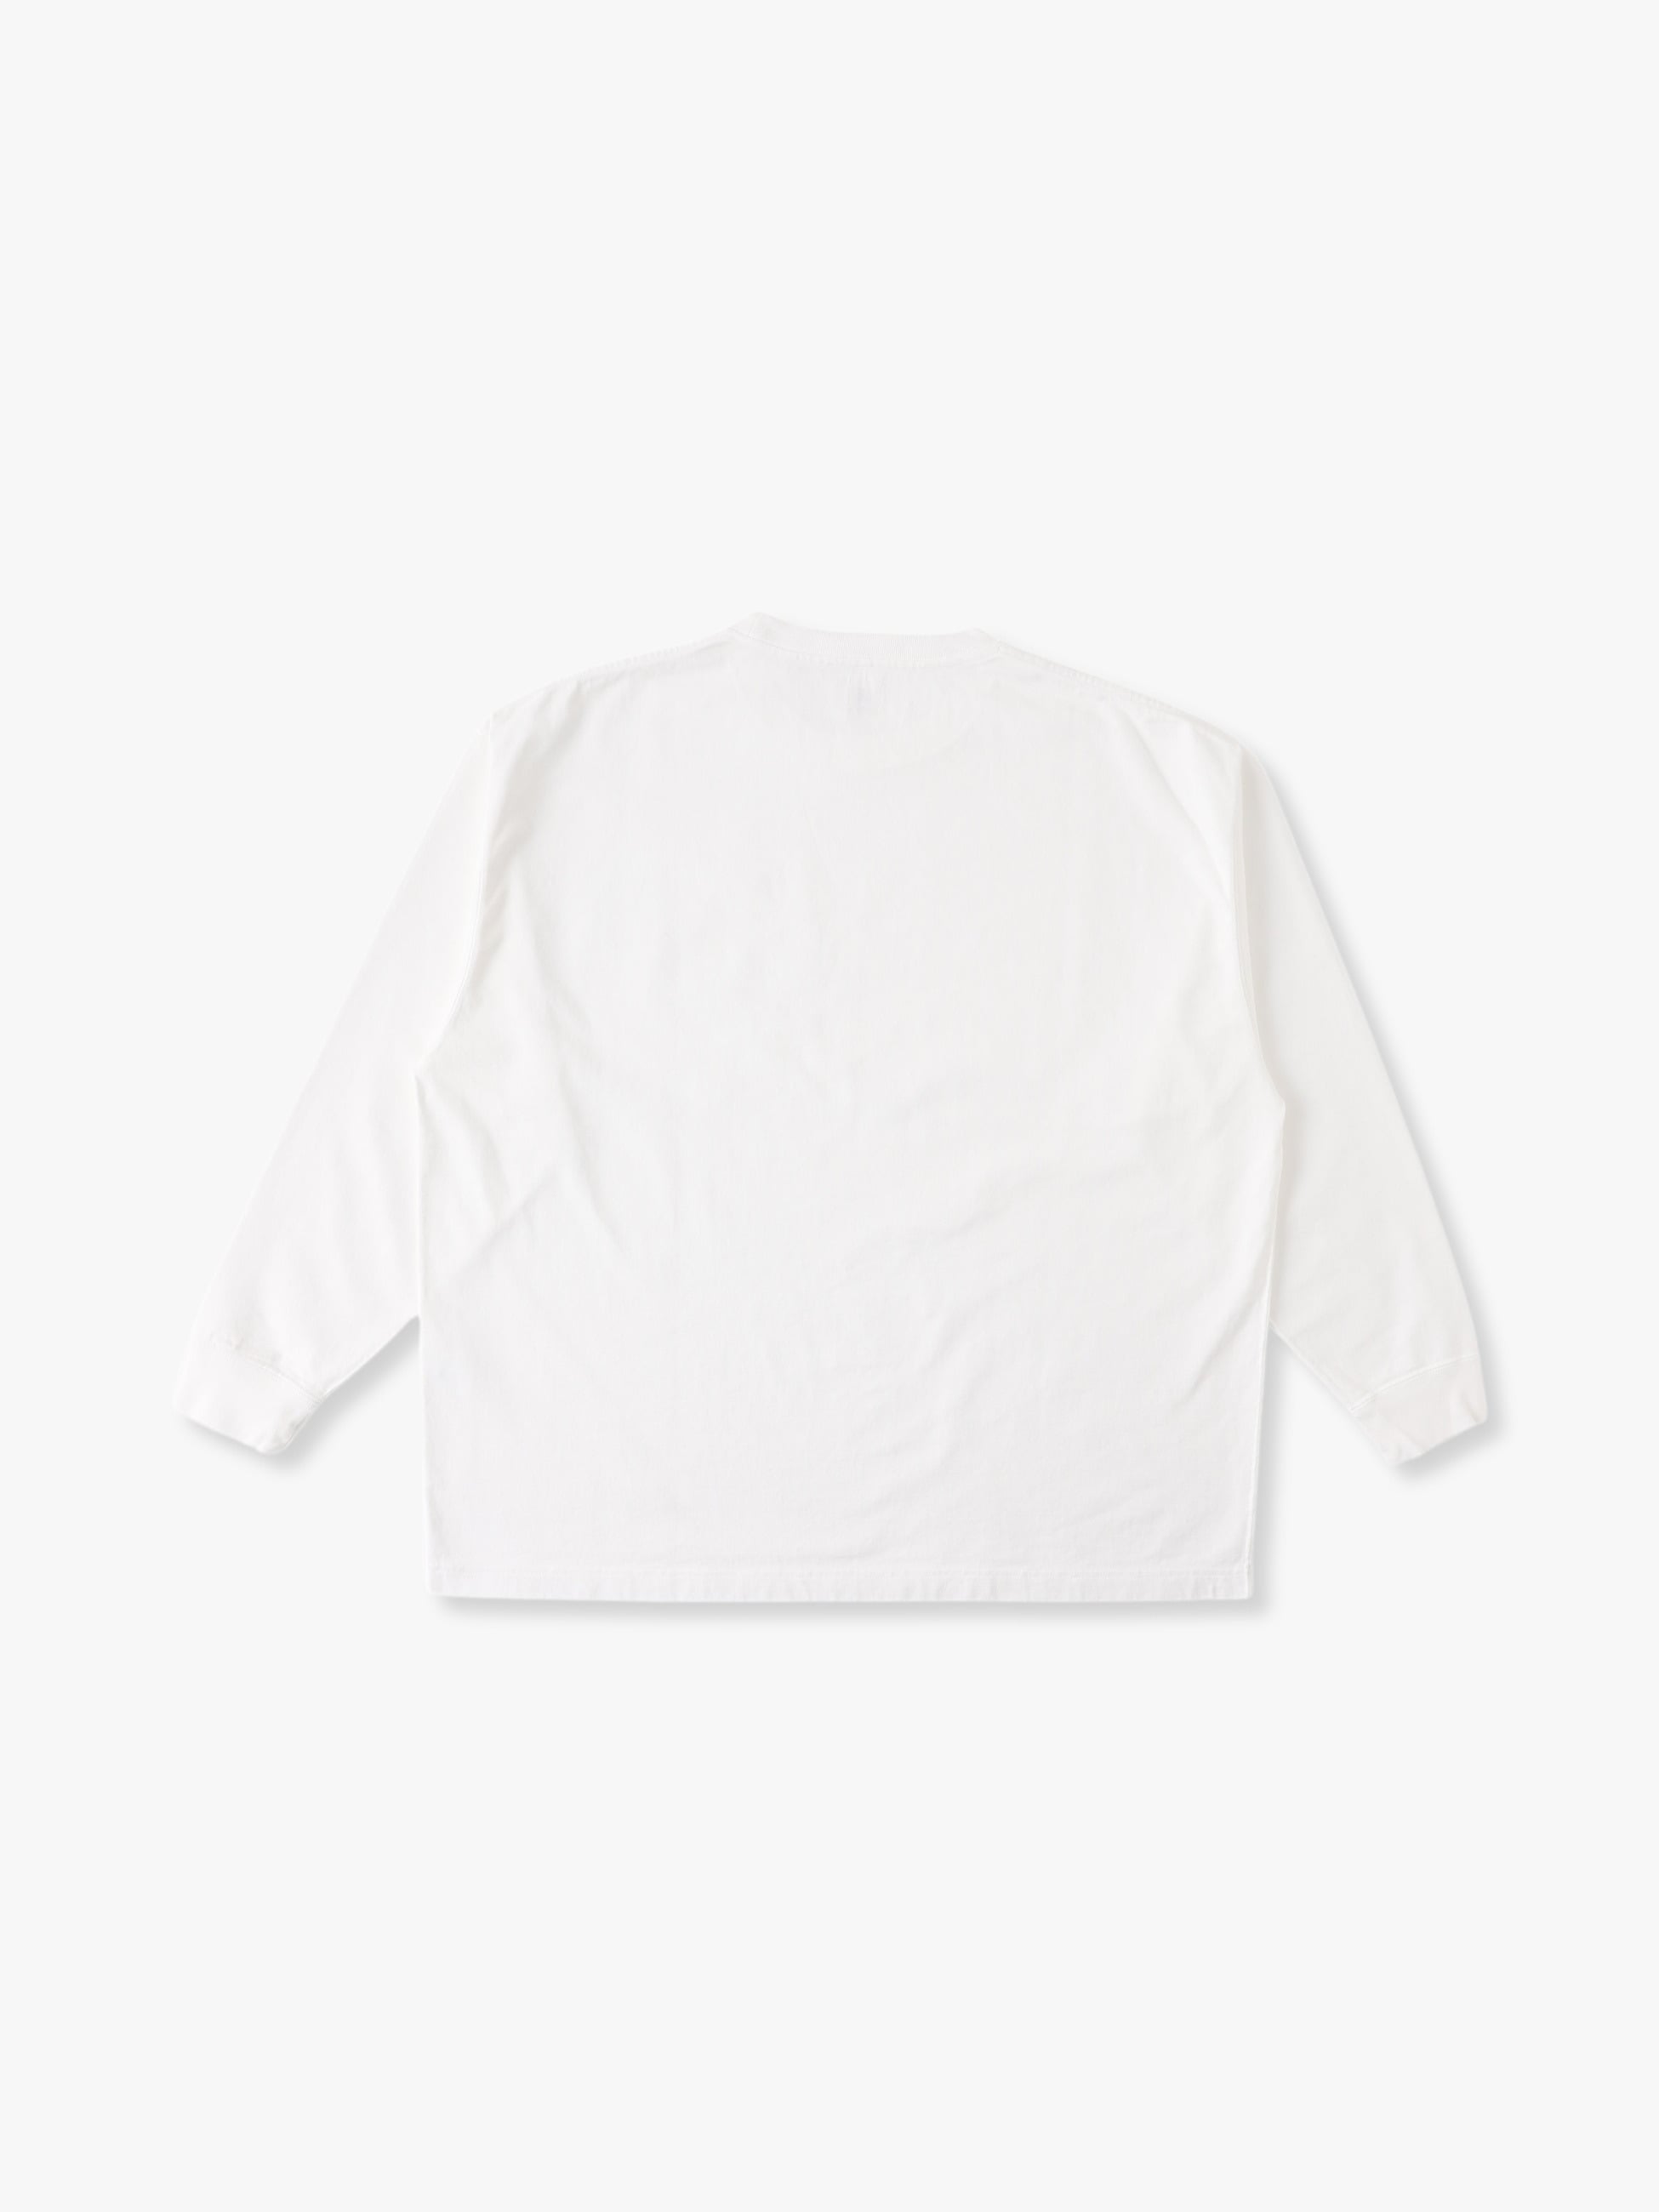 人気⭐️ロンハーマン OZ ロングTシャツ ホワイト即完売した人気商品です